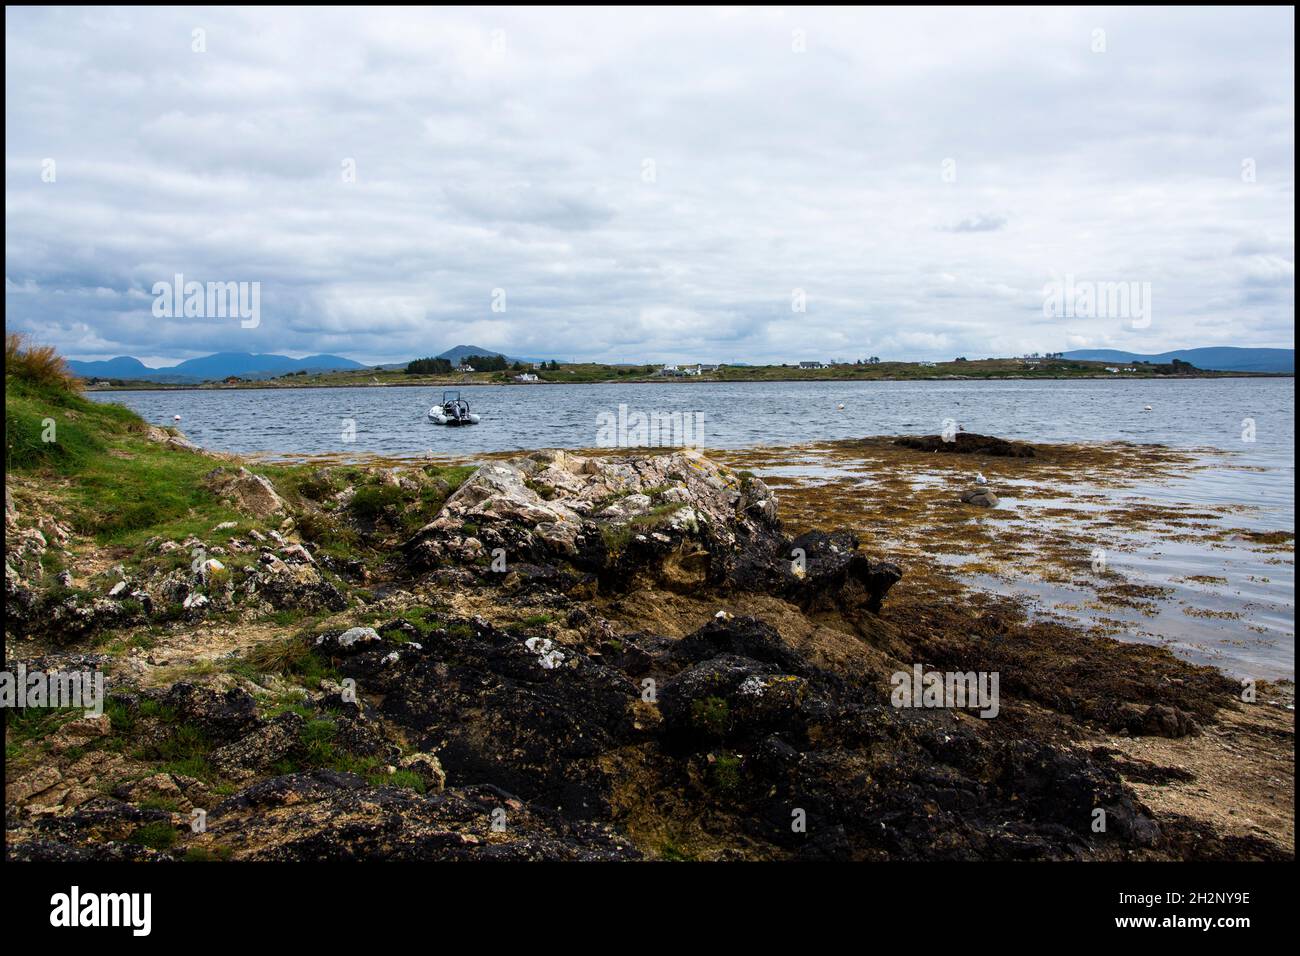 Une sélection d'images prises dans la région du Connemara du comté de Galway, les paysages d'Irlande et la voie de l'Atlantique sauvage. Banque D'Images